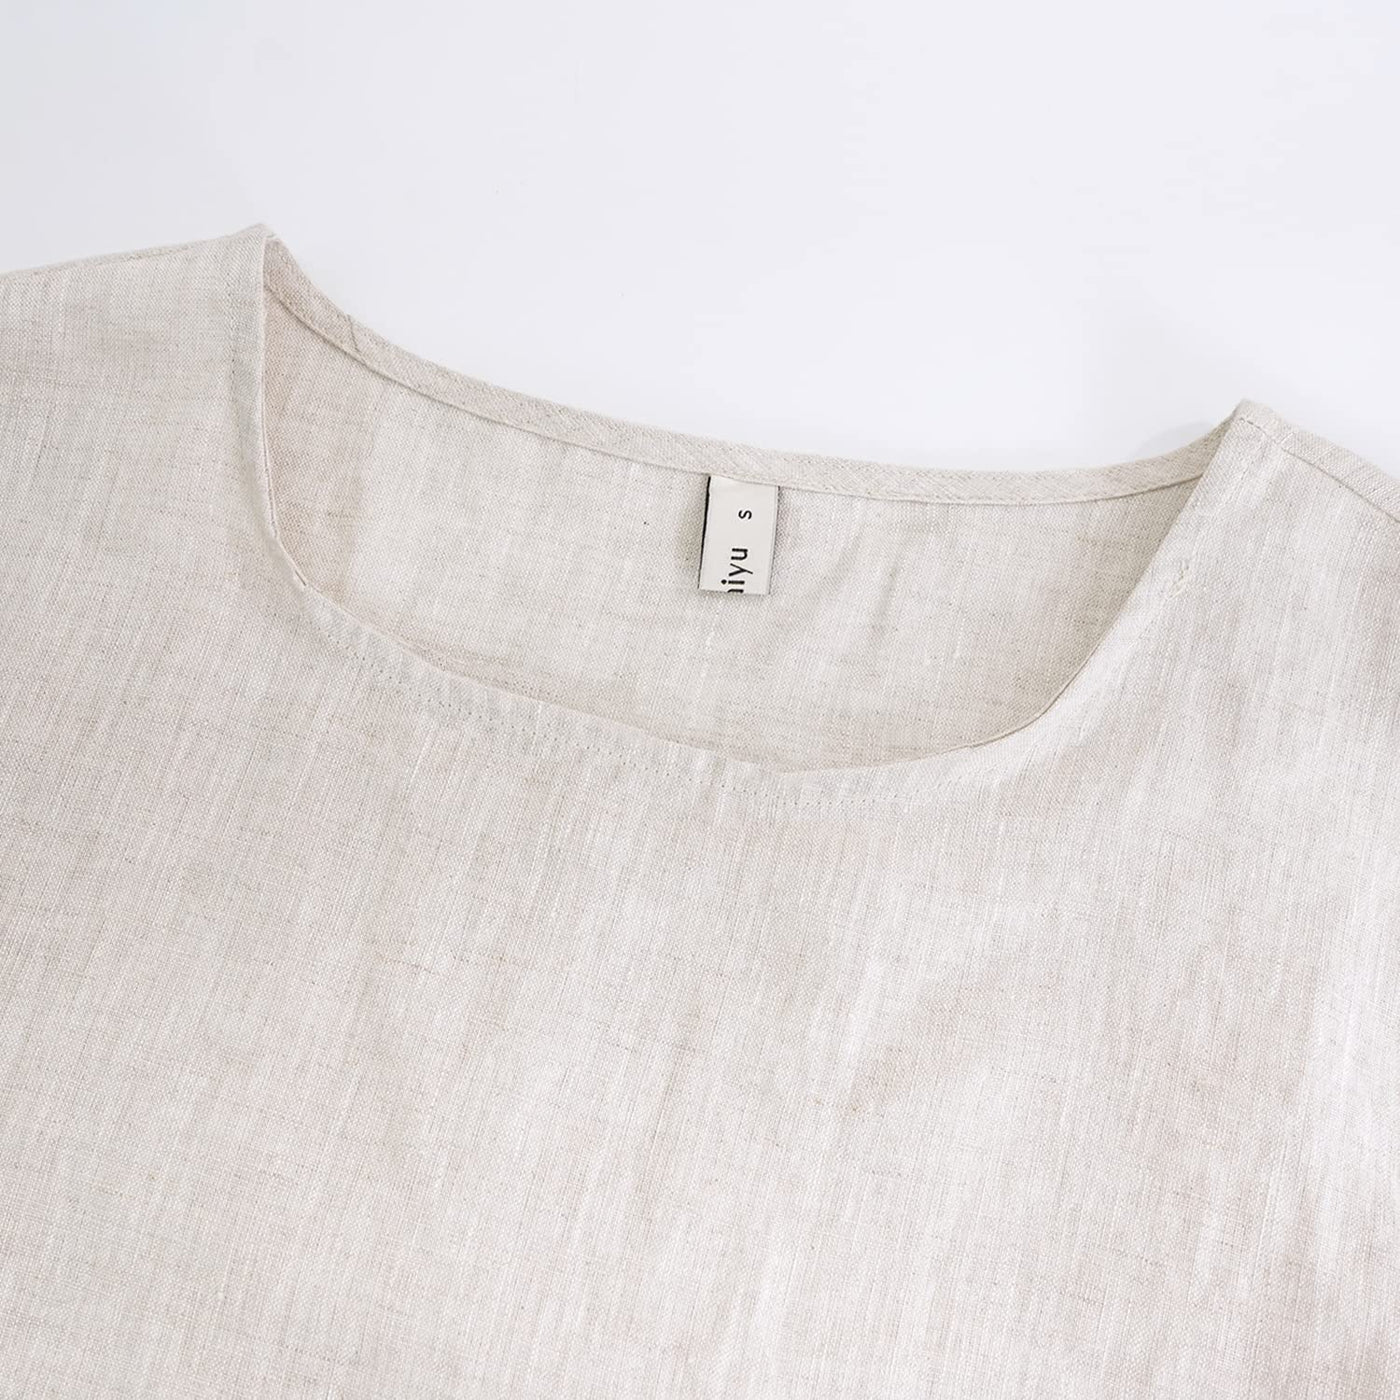 NTG Fad Men’s 100% Linen Summer Pullover Shirt